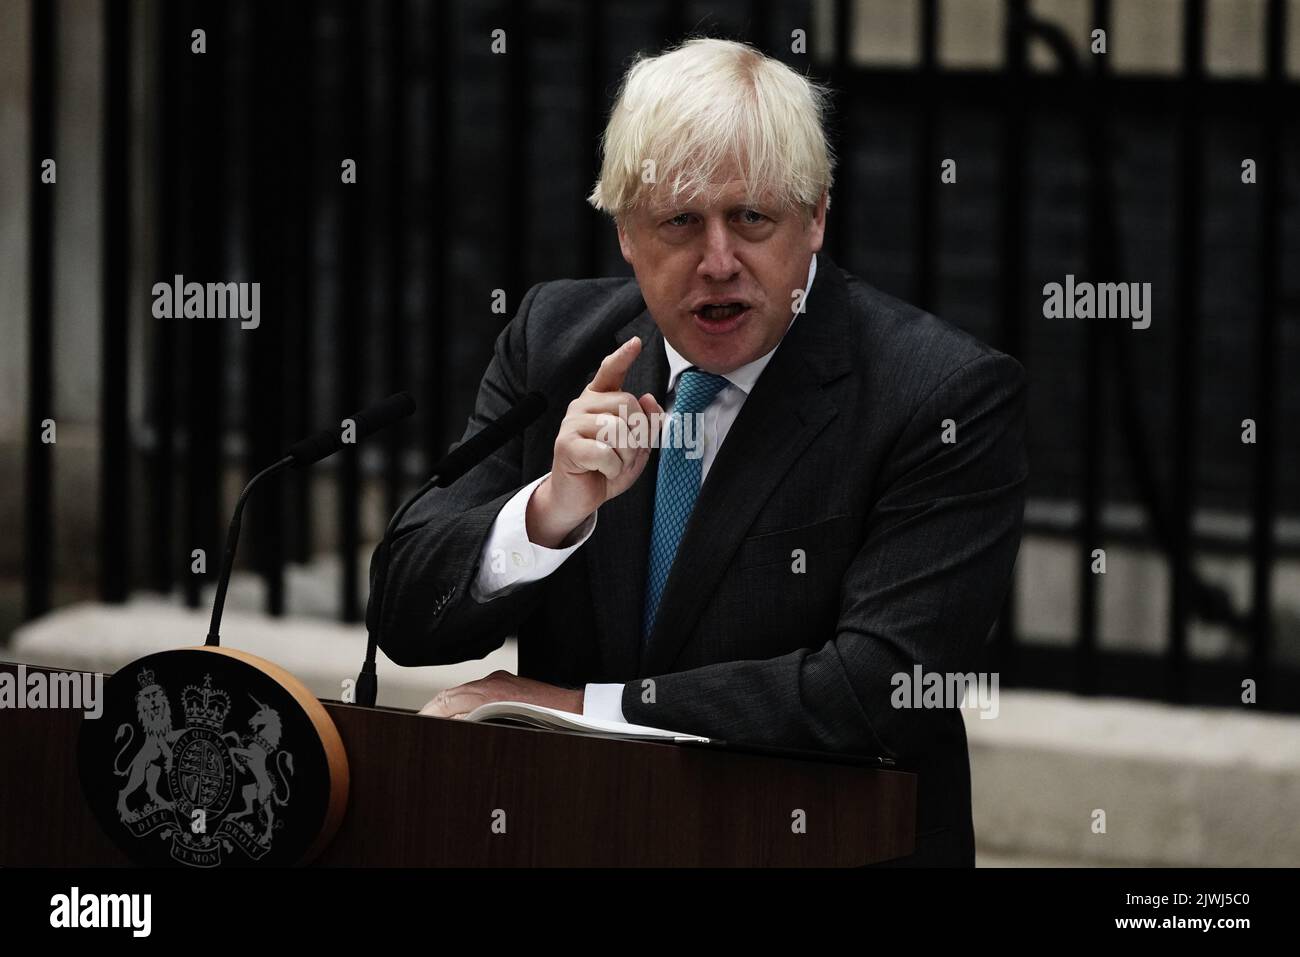 Le Premier ministre sortant Boris Johnson prononce un discours à l’extérieur du 10 Downing Street, Londres, avant de partir pour Balmoral pour un public avec la reine Elizabeth II pour démissionner officiellement du poste de Premier ministre. Date de la photo: Mardi 6 septembre 2022. Banque D'Images